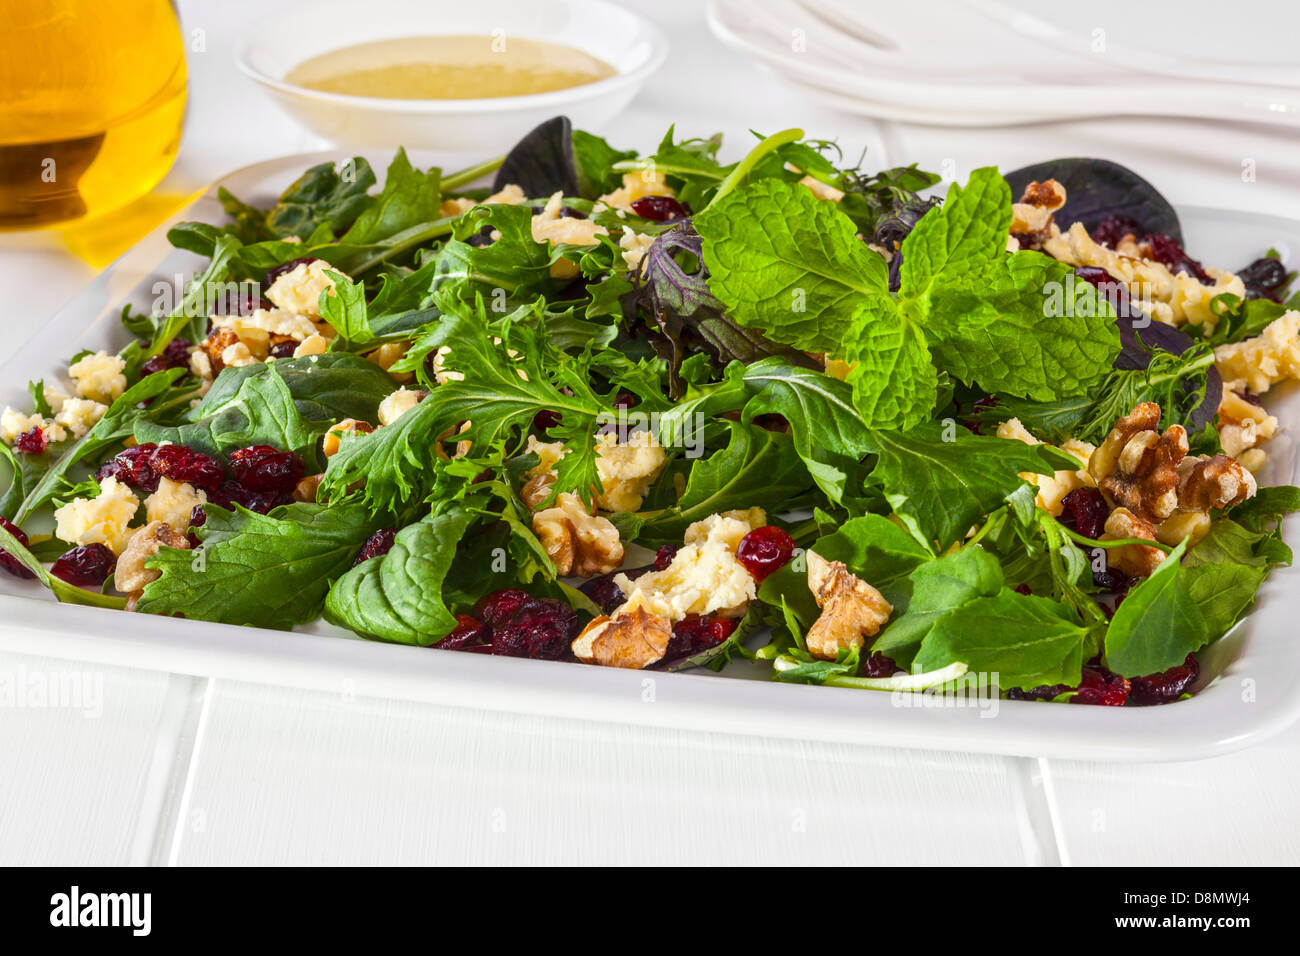 Salade de Feta Canneberges et noix - un savoureux traiter faible en calories, feta, noix et canneberges salade, avec une vinaigrette à la moutarde de Dijon. Banque D'Images